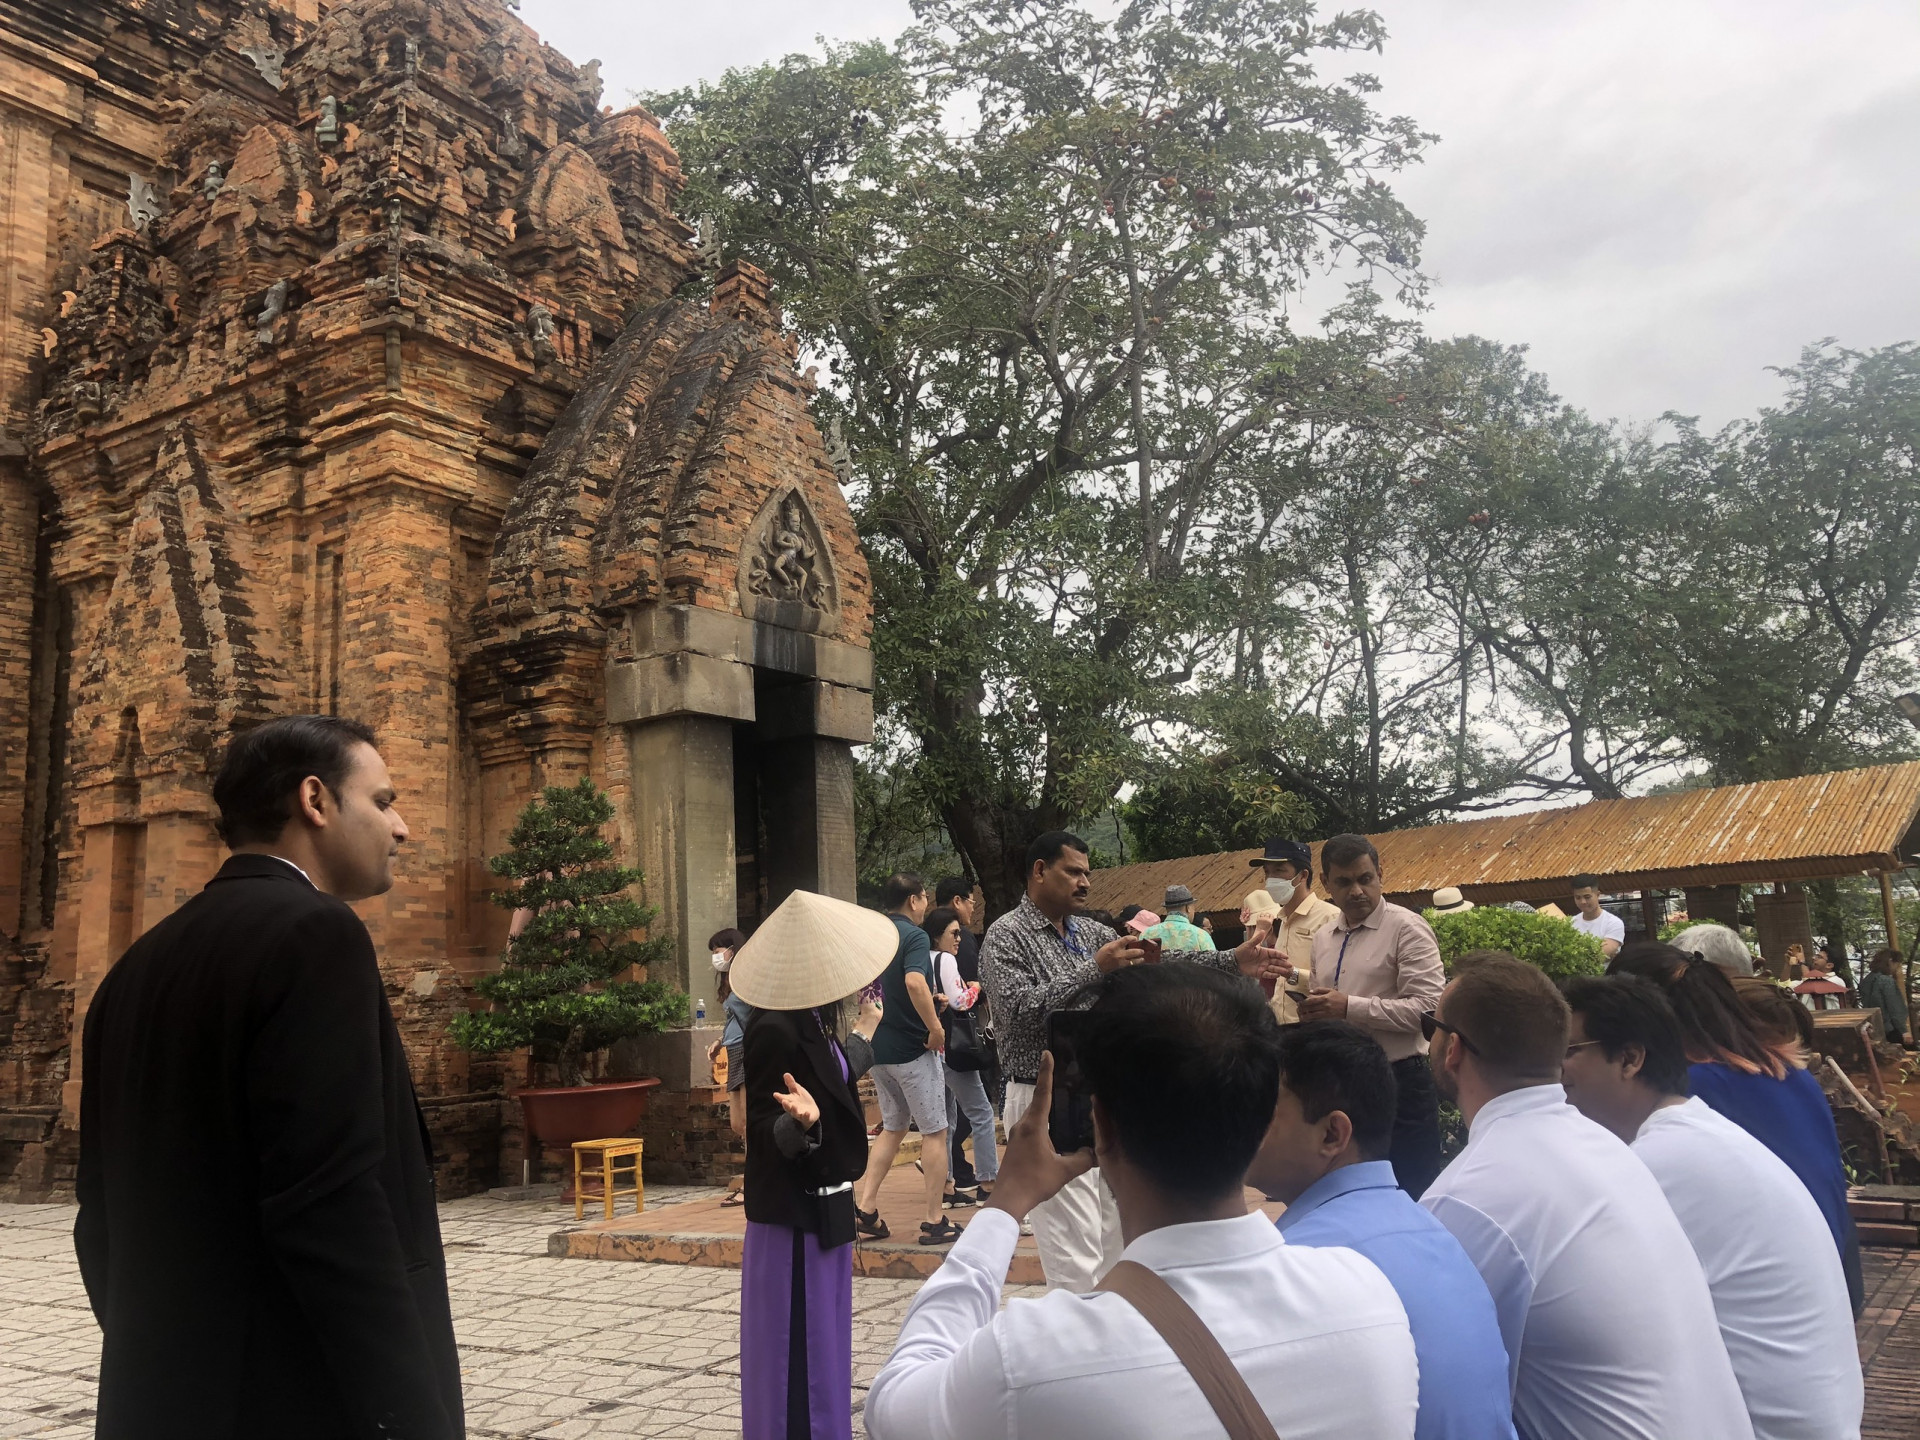  Hướng dẫn viên giới thiệu những nét độc đáo của Khu di tích Tháp Bà Ponagar với đoàn famtrip doanh nghiệp du lịch Ấn Độ.